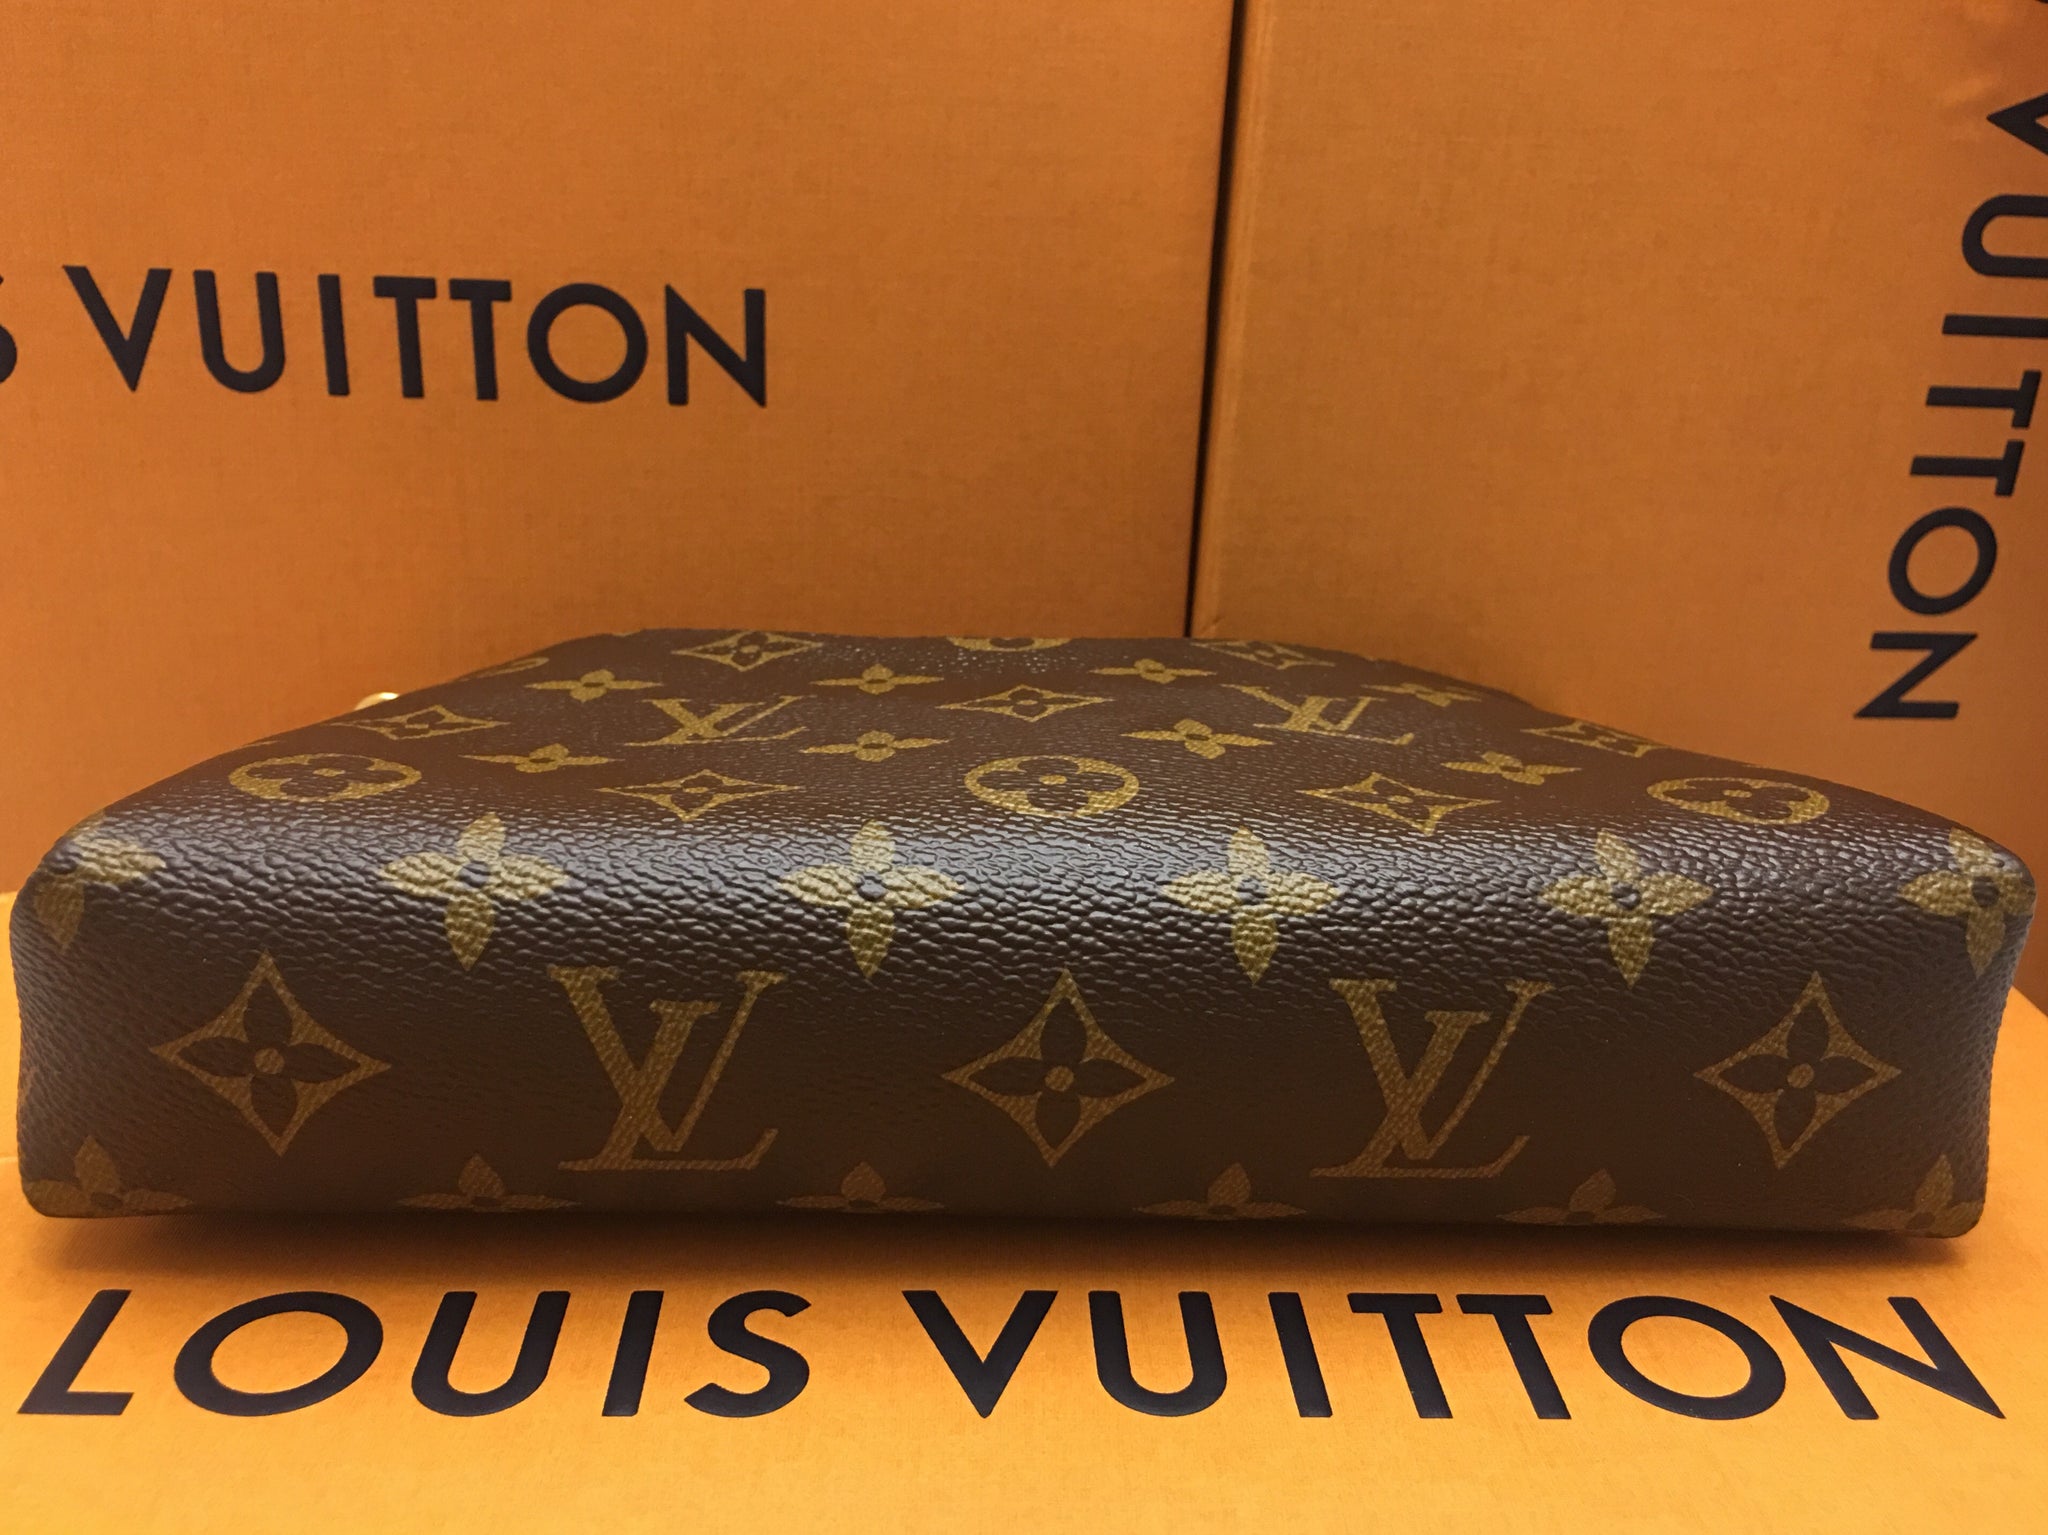 Louis Vuitton Monogram Pallas Clutch Blue Marine 317206